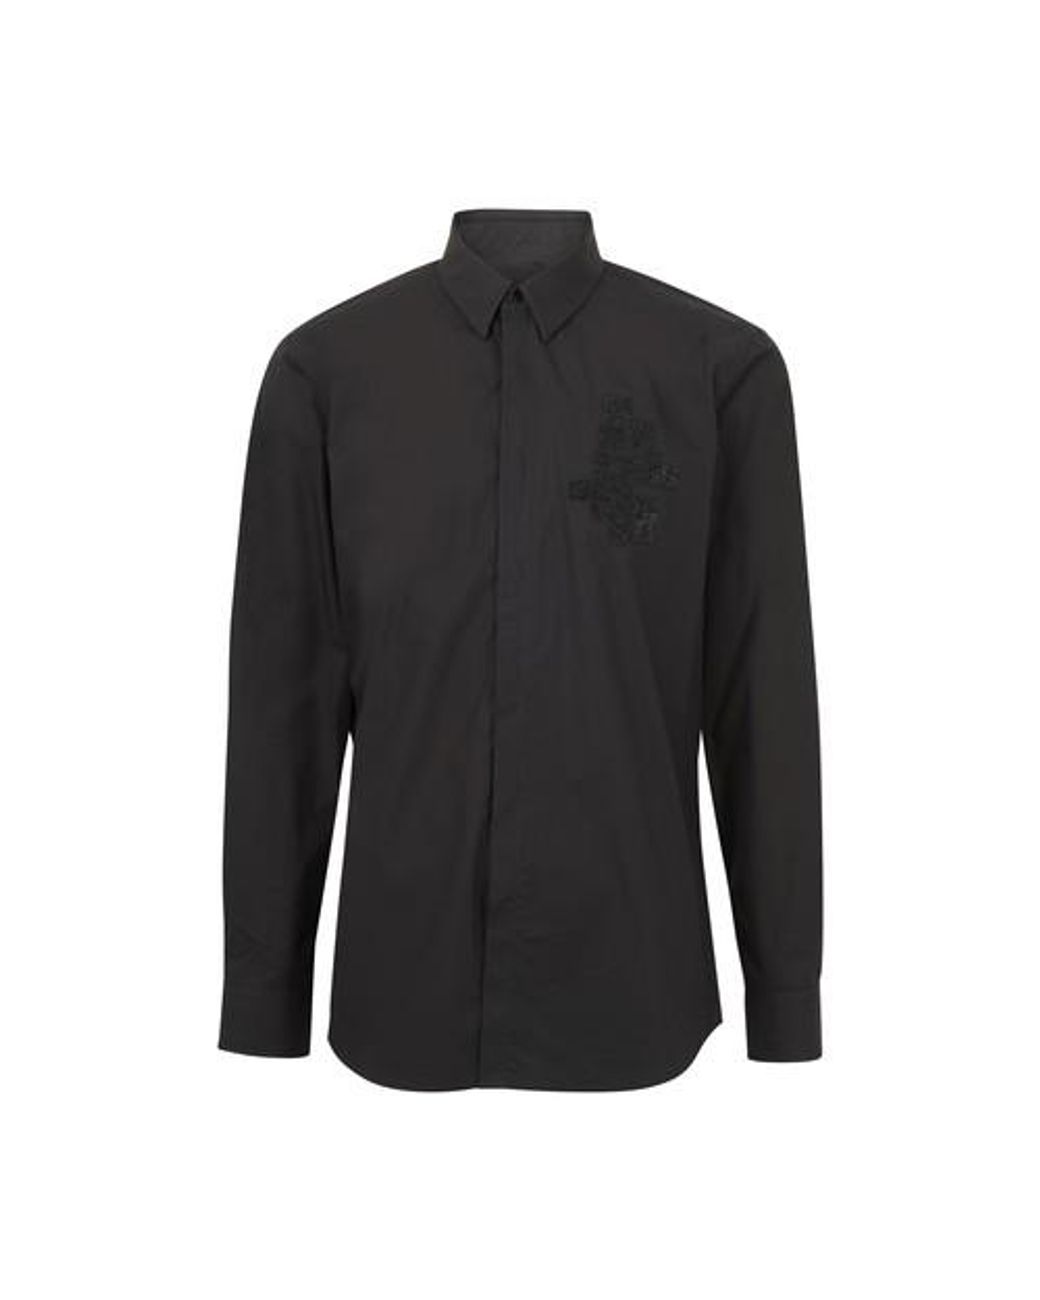 Fendi Ff Strass Long Sleeves Shirt in Black for Men - Lyst